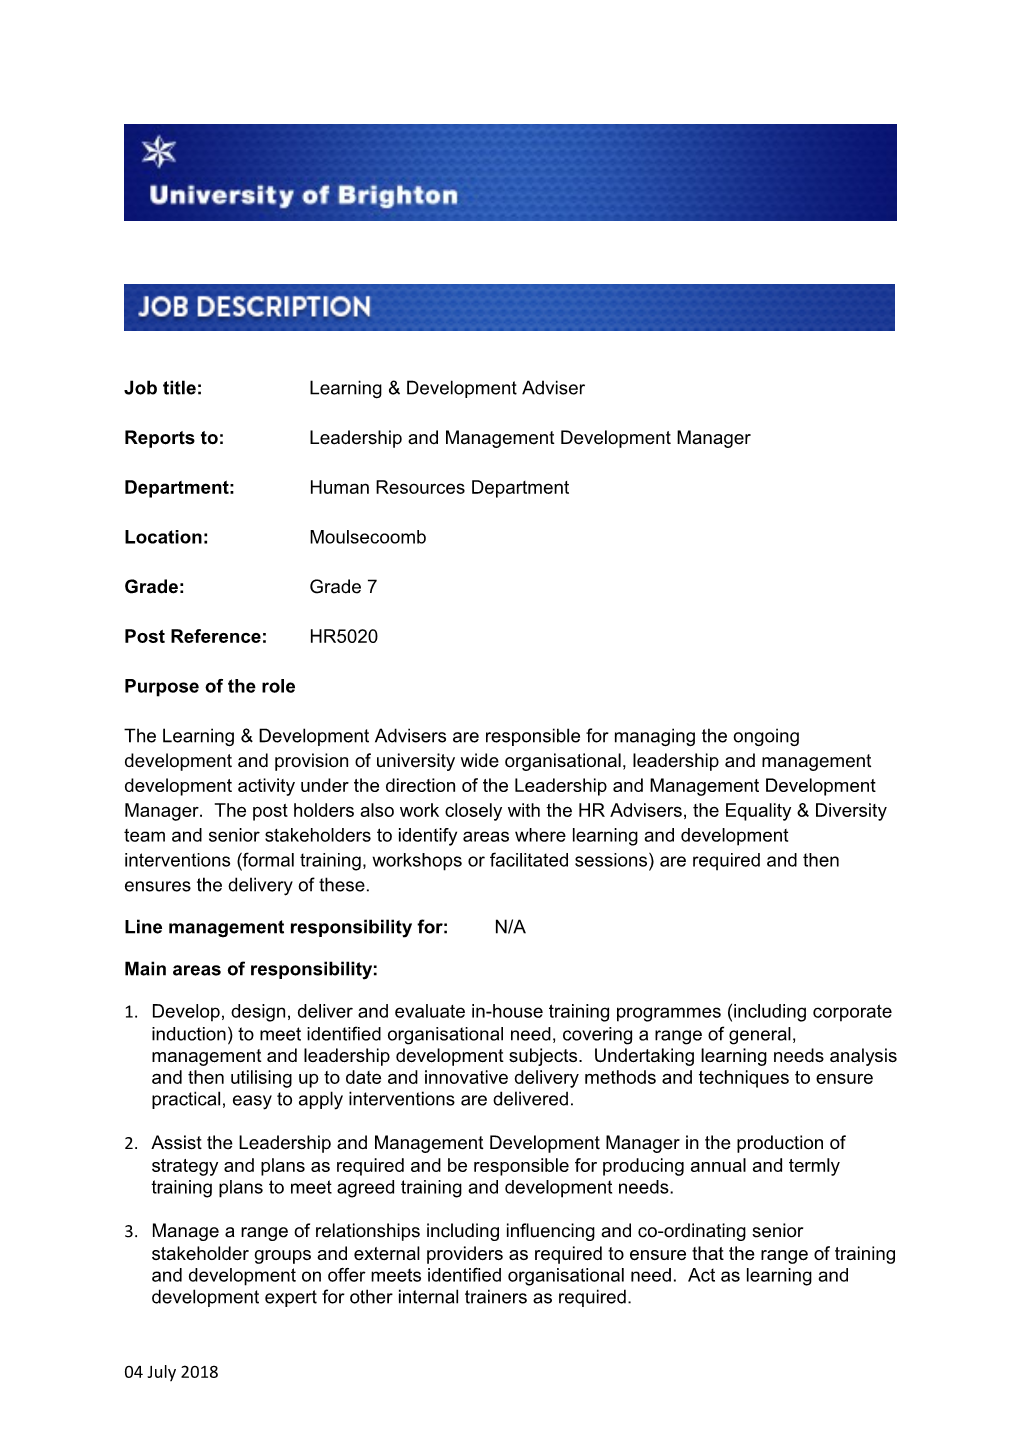 Job Title: Learning & Development Adviser